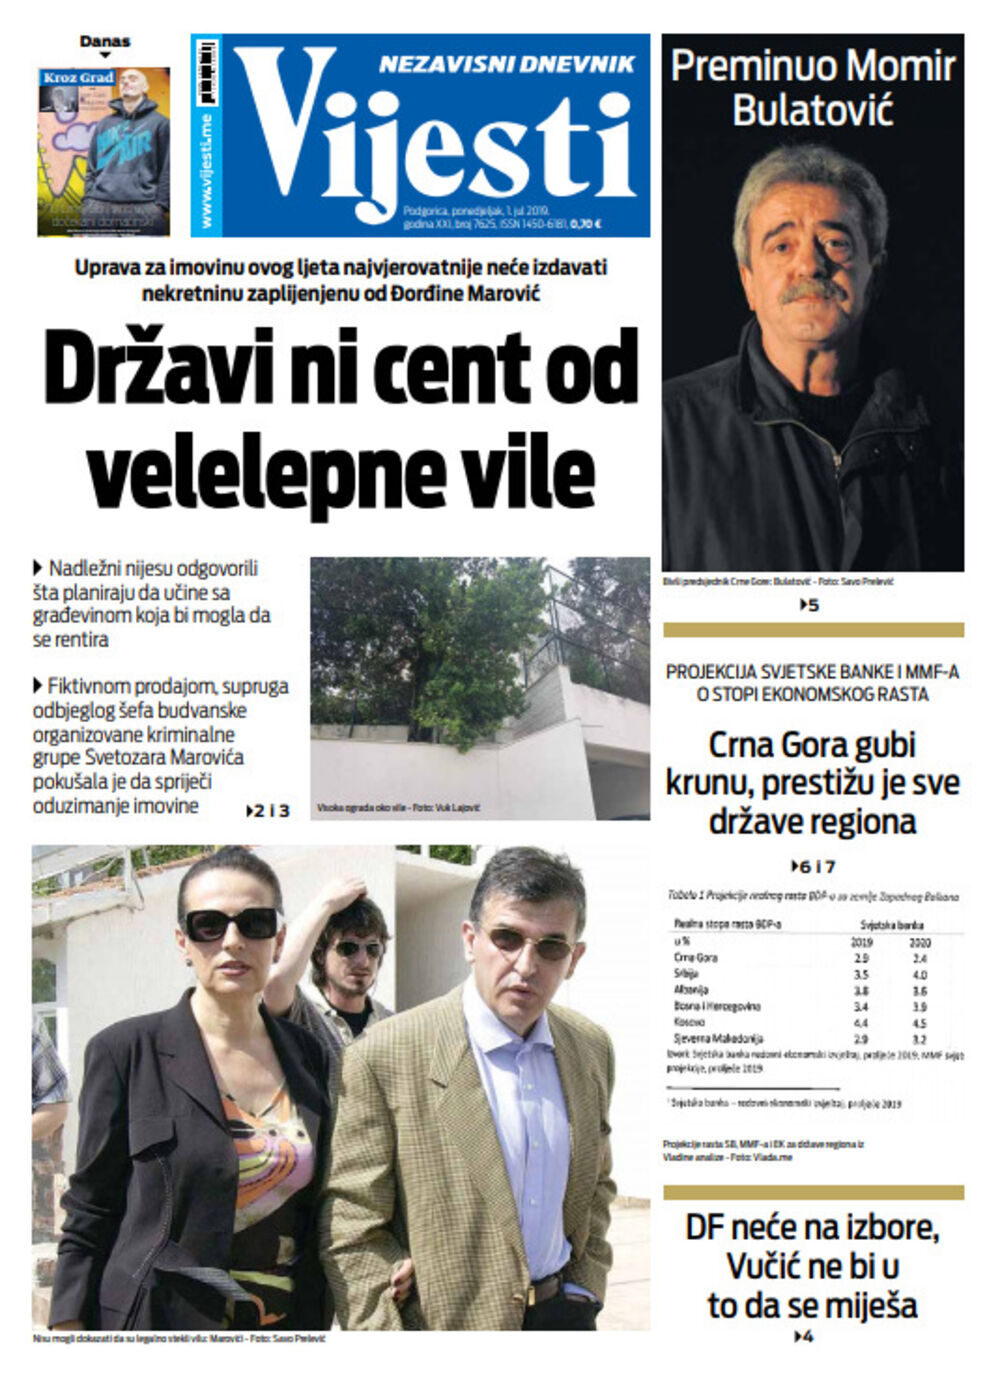 Naslovna strana "Vijesti" za prvi jul, Foto: Vijesti